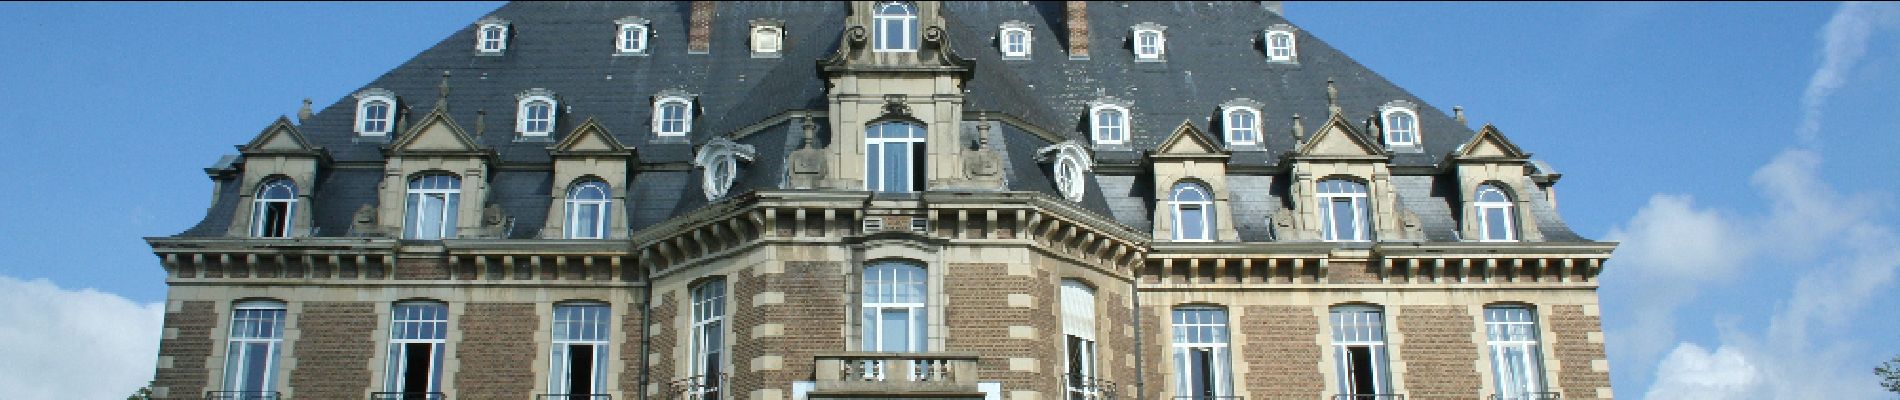 Point of interest Namur - Le château de Namur - Photo